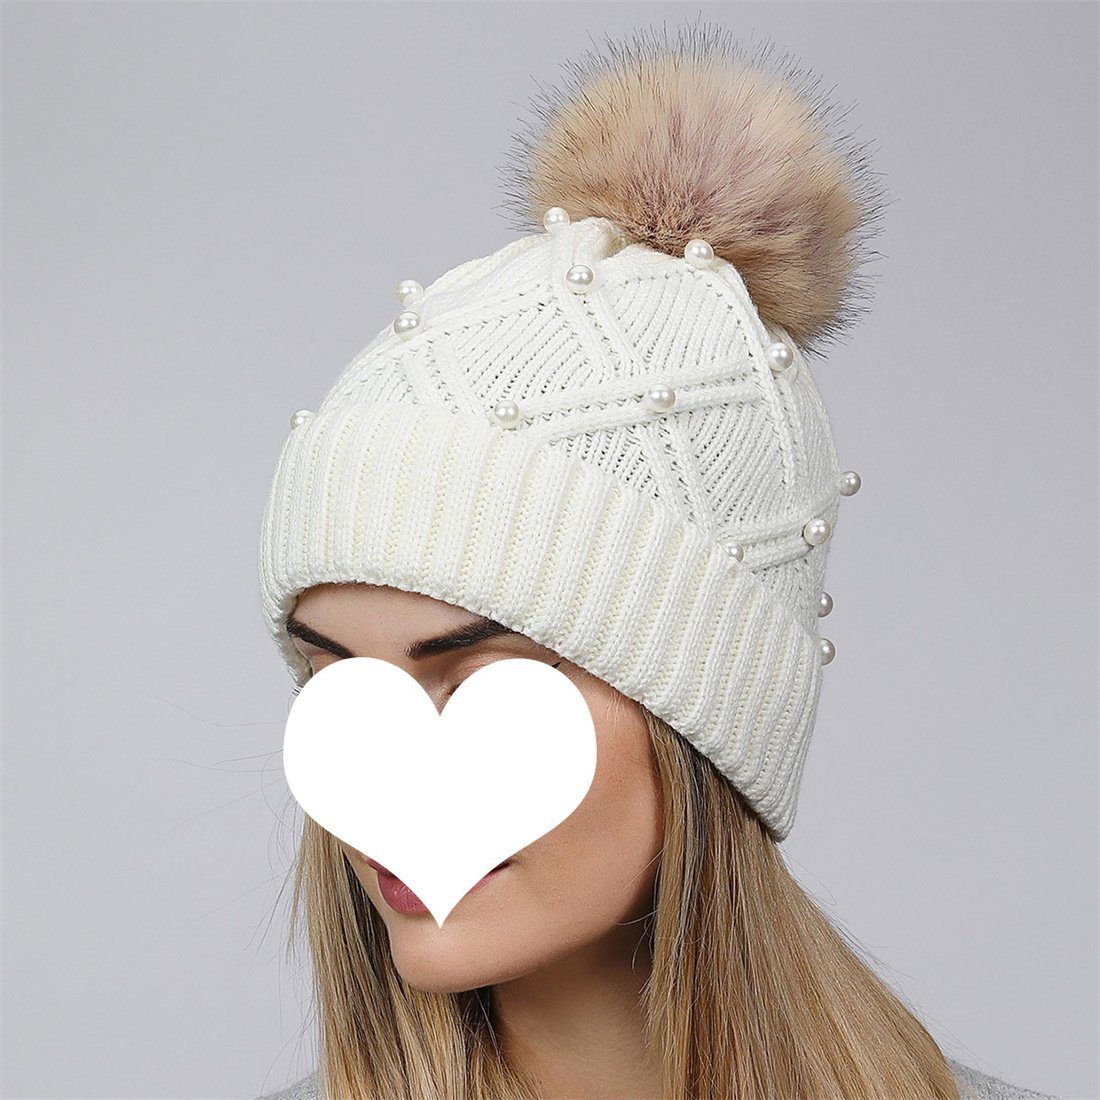 DÖRÖY Strickmütze Women's Fashion Hairball Knitted Cap, Winter Thickened Warm Woolen Cap Weiß